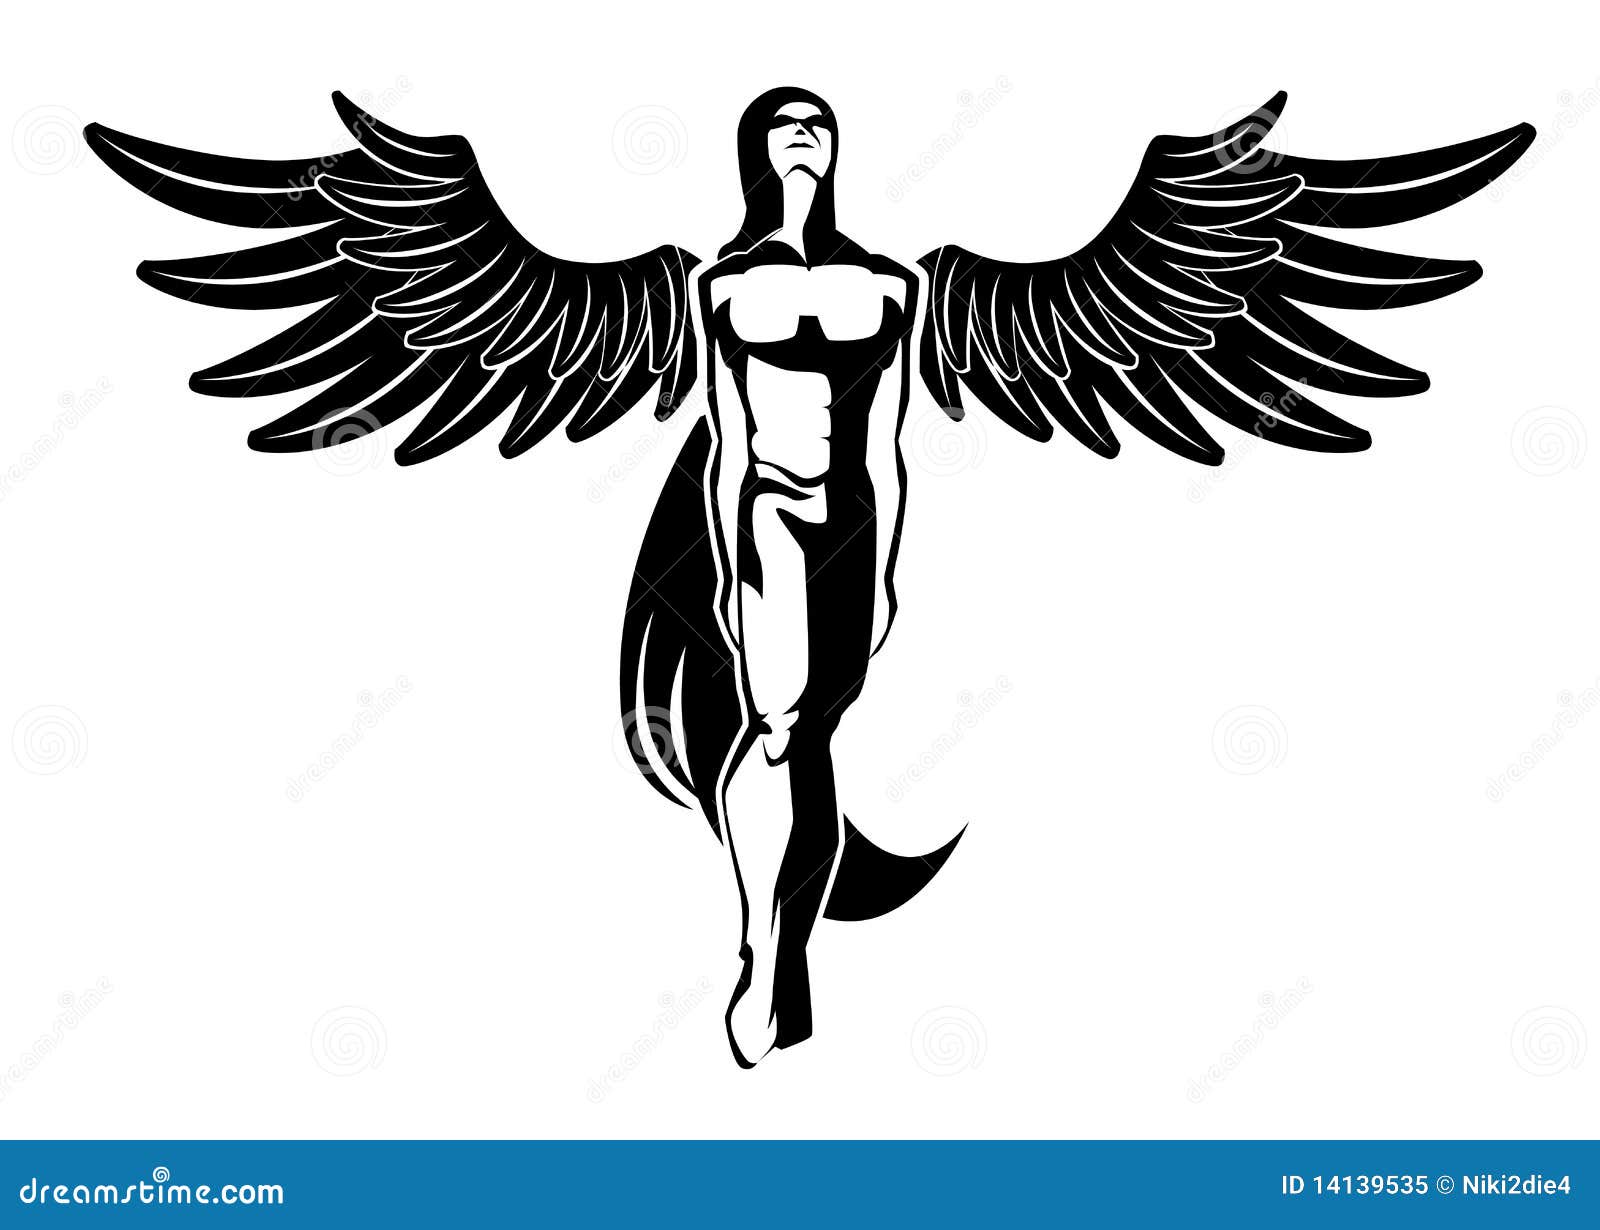 Flying Angel Tattoo | Fairy tattoo, Body art tattoos, Ankle tattoo designs